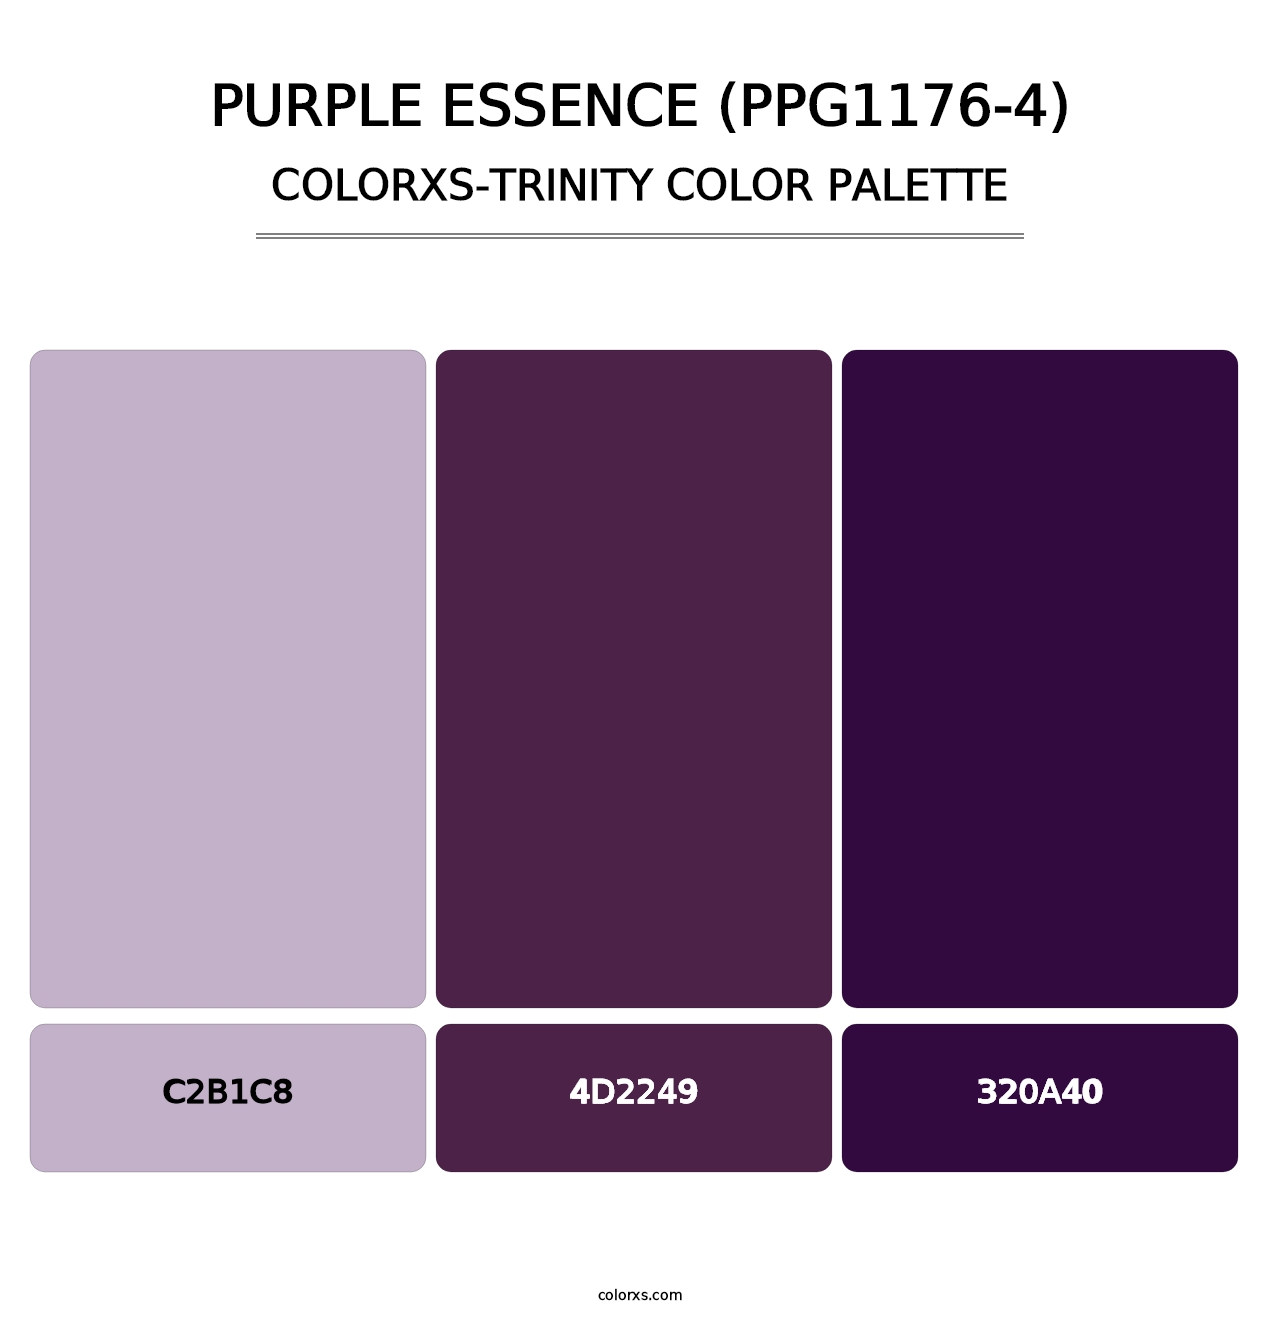 Purple Essence (PPG1176-4) - Colorxs Trinity Palette